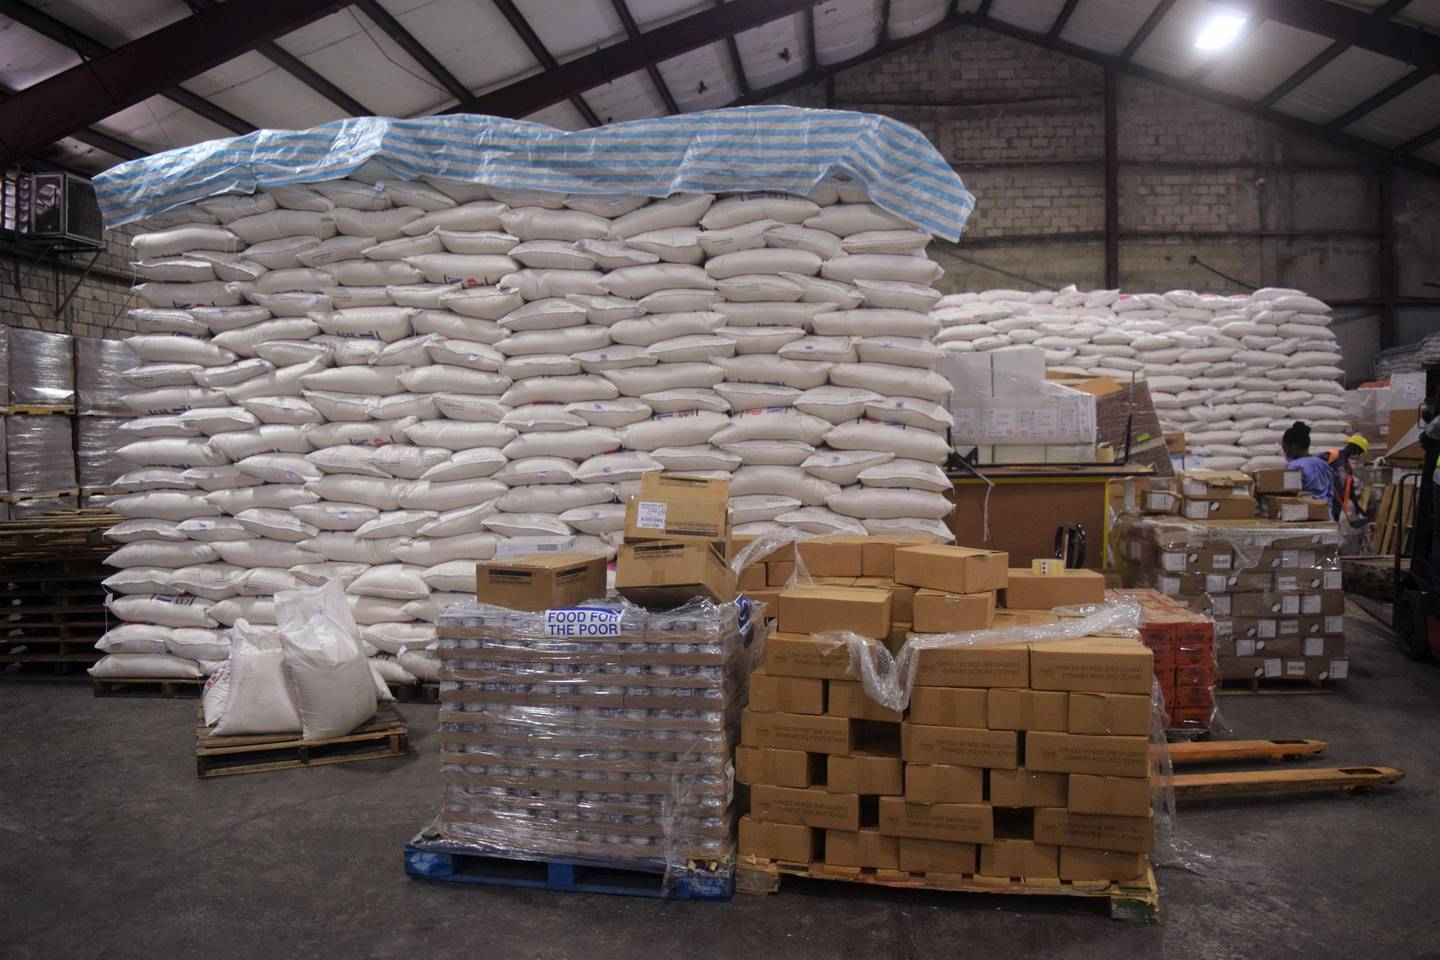 El almacén de Alimentos para los Pobres está repleto de sacos de arroz para ser entregados a las zonas afectadas por el terremoto en Puerto Príncipe. Sin embargo, las bandas han interrumpido la distribución de alimentos a los necesitados.
dfd